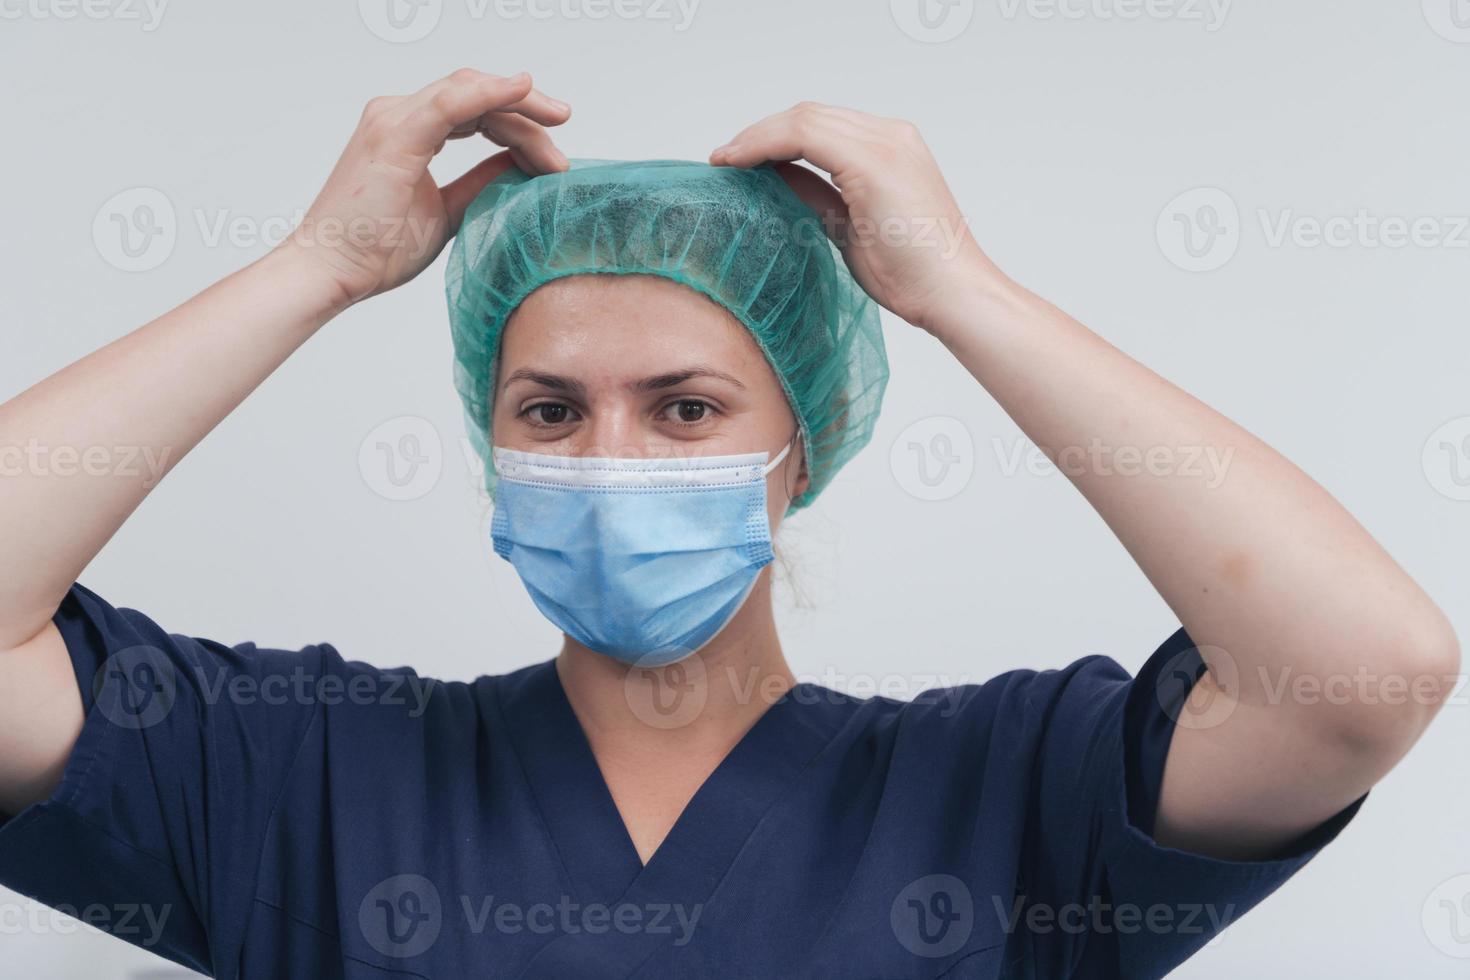 gros plan d'une femme médecin ou scientifique avec un masque médical et une casquette chirurgicale sur fond gris. elle ajuste le masque avec photo